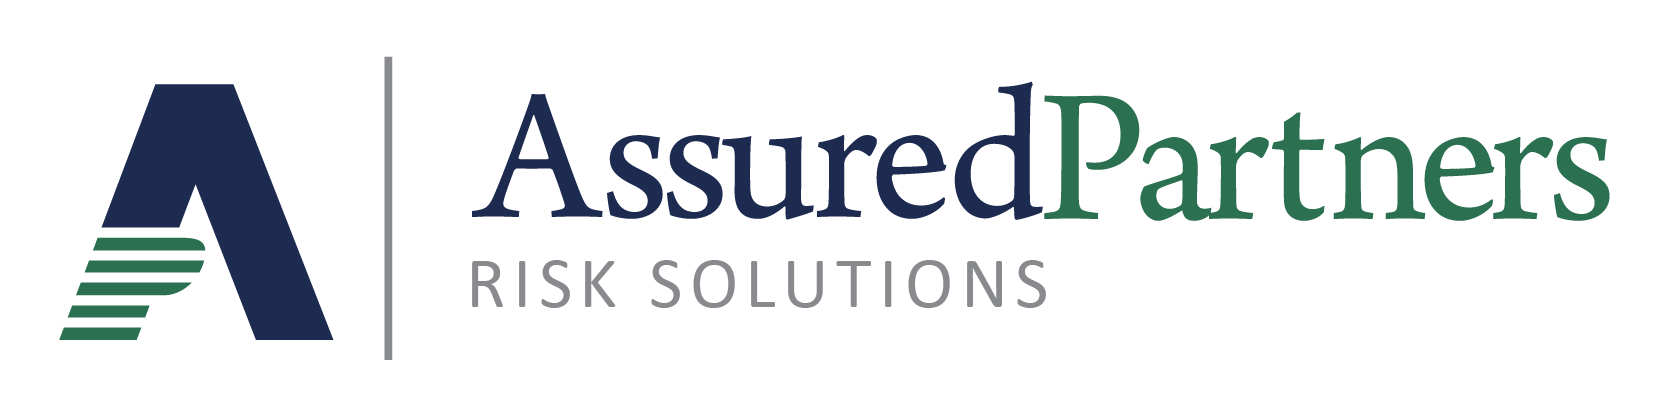 AP-Risk-Solutions-logo-colour